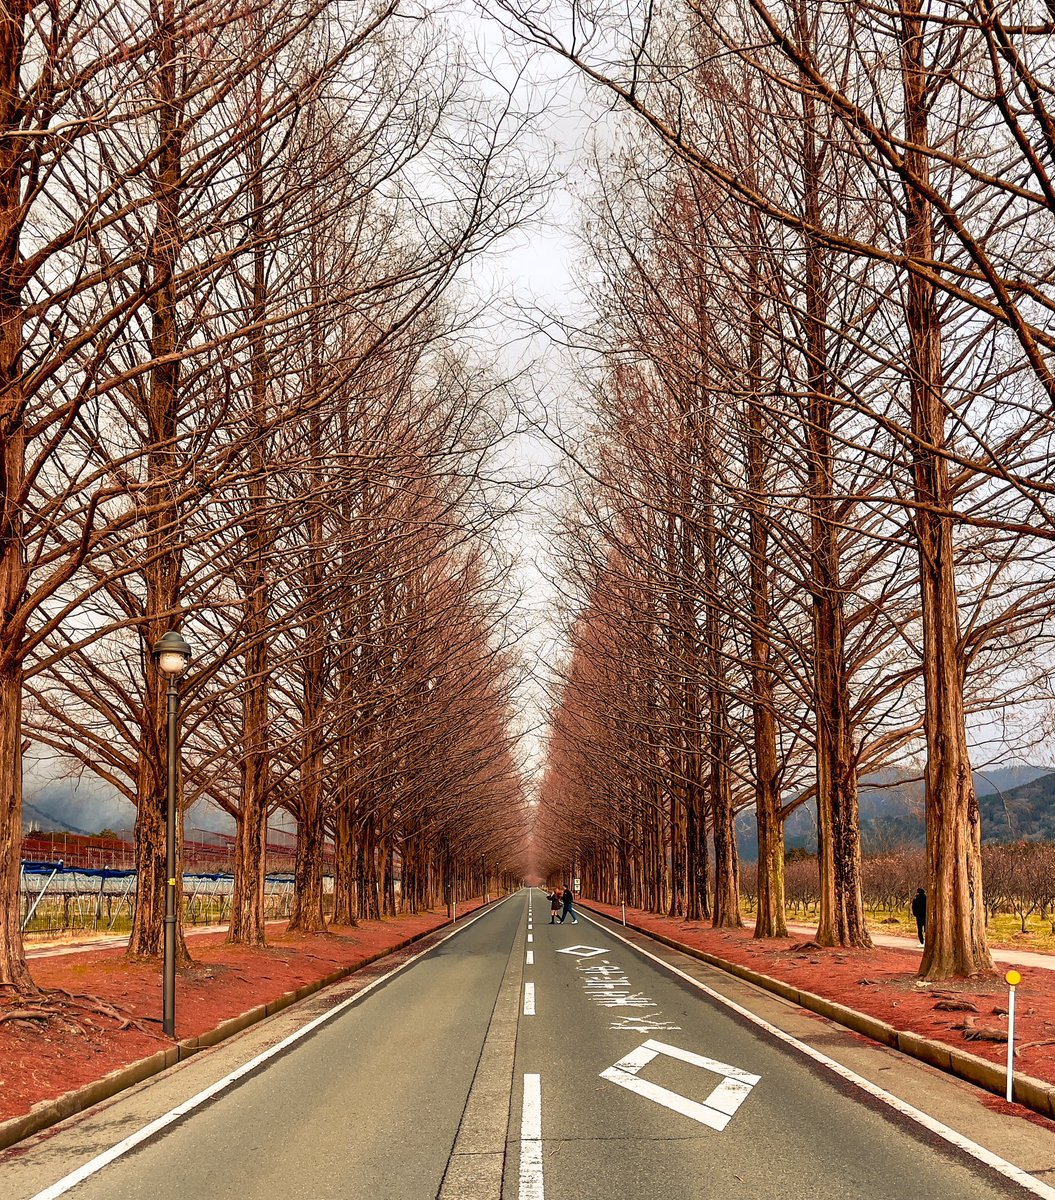 Japonya’nın en güzel yolunu buldum :) Yüzlerce su ladini (metasequoia?) ile kaplı bu 2.5 km’lik yolda yürümek veya arabayla geçmek çok keyifli.